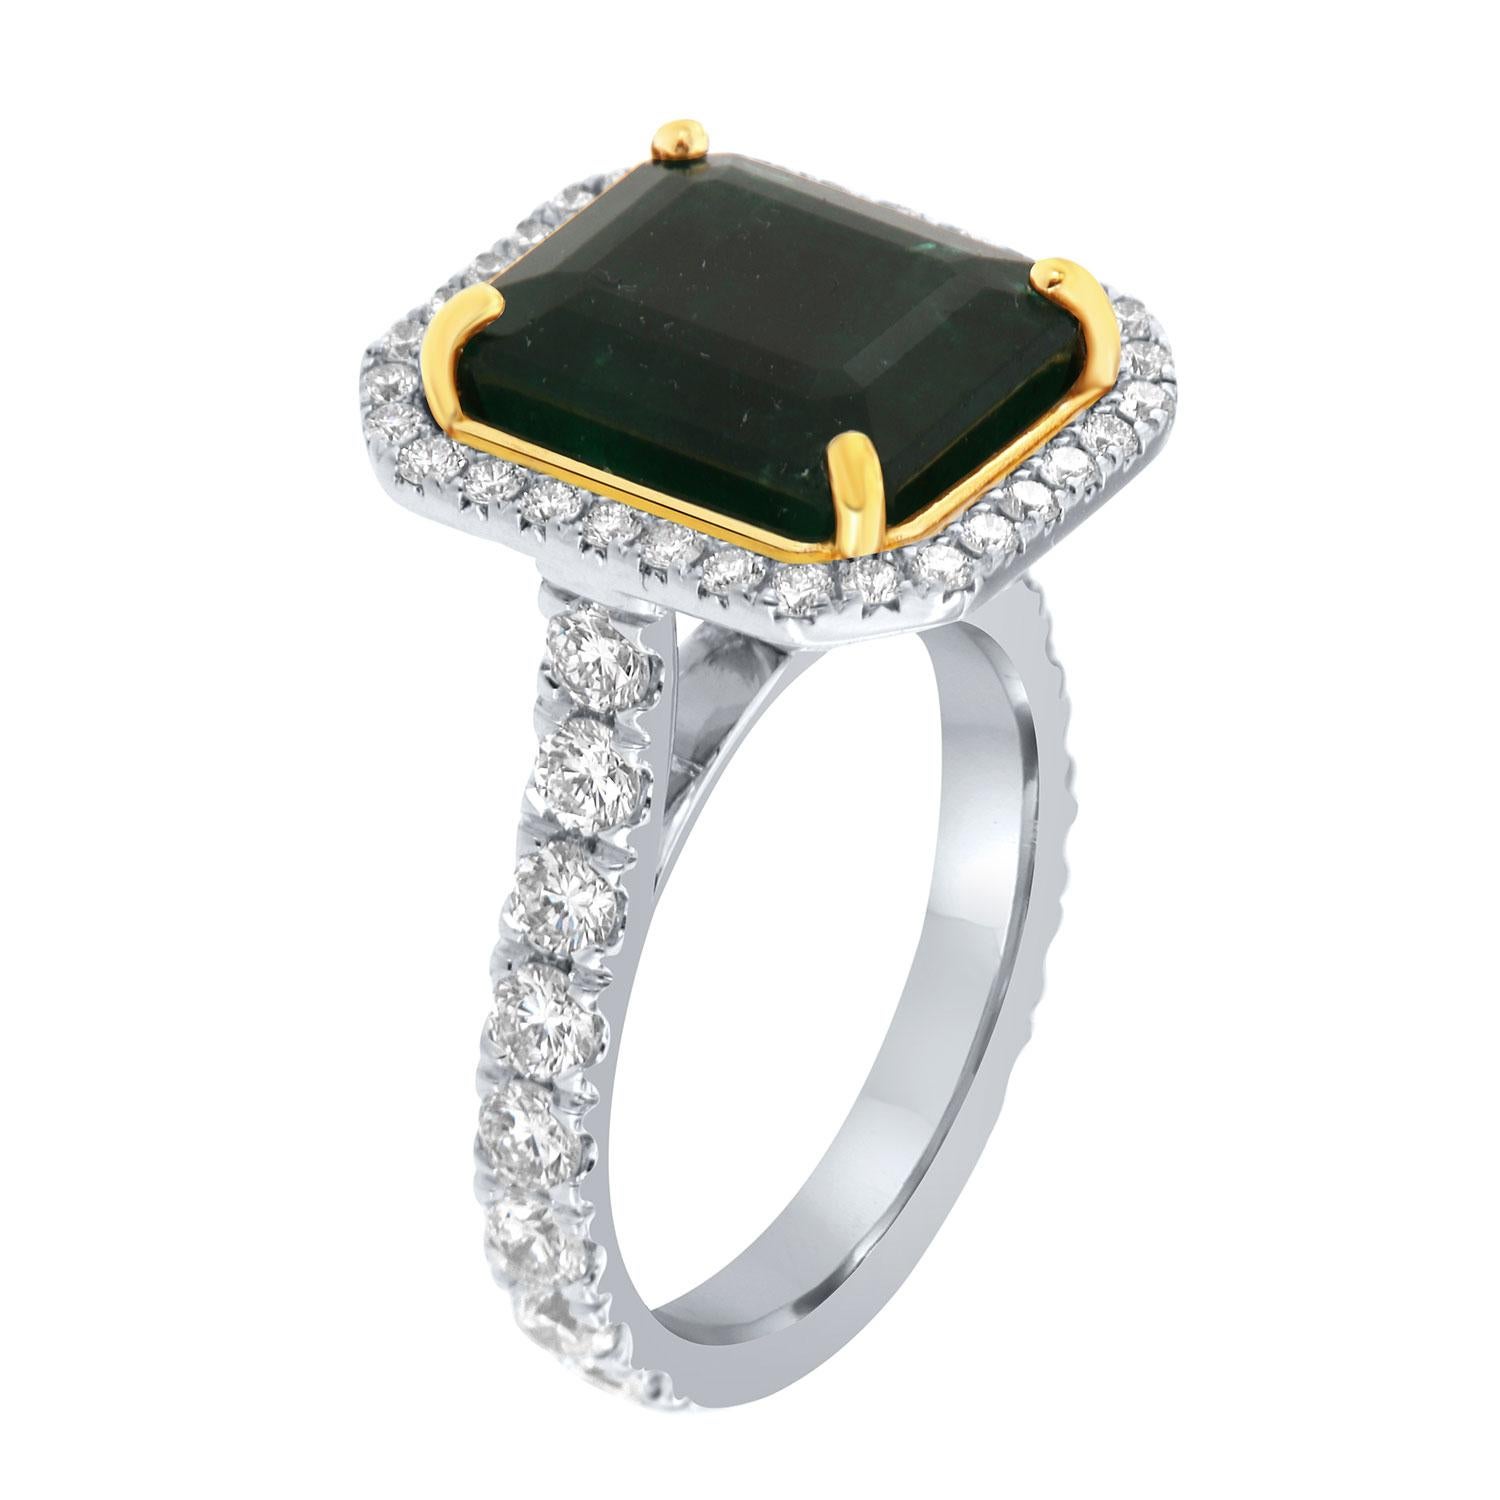 Dieser Ring aus 18 Karat Weiß- und Gelbgold enthält einen 7,51 Karat großen, natürlichen grünen Smaragd aus Sambia. Er wird von einem Halo aus runden Brillanten auf einem 3,3 mm breiten Band umschlossen. Die Diamanten sind auf 75 % des Bandes mit